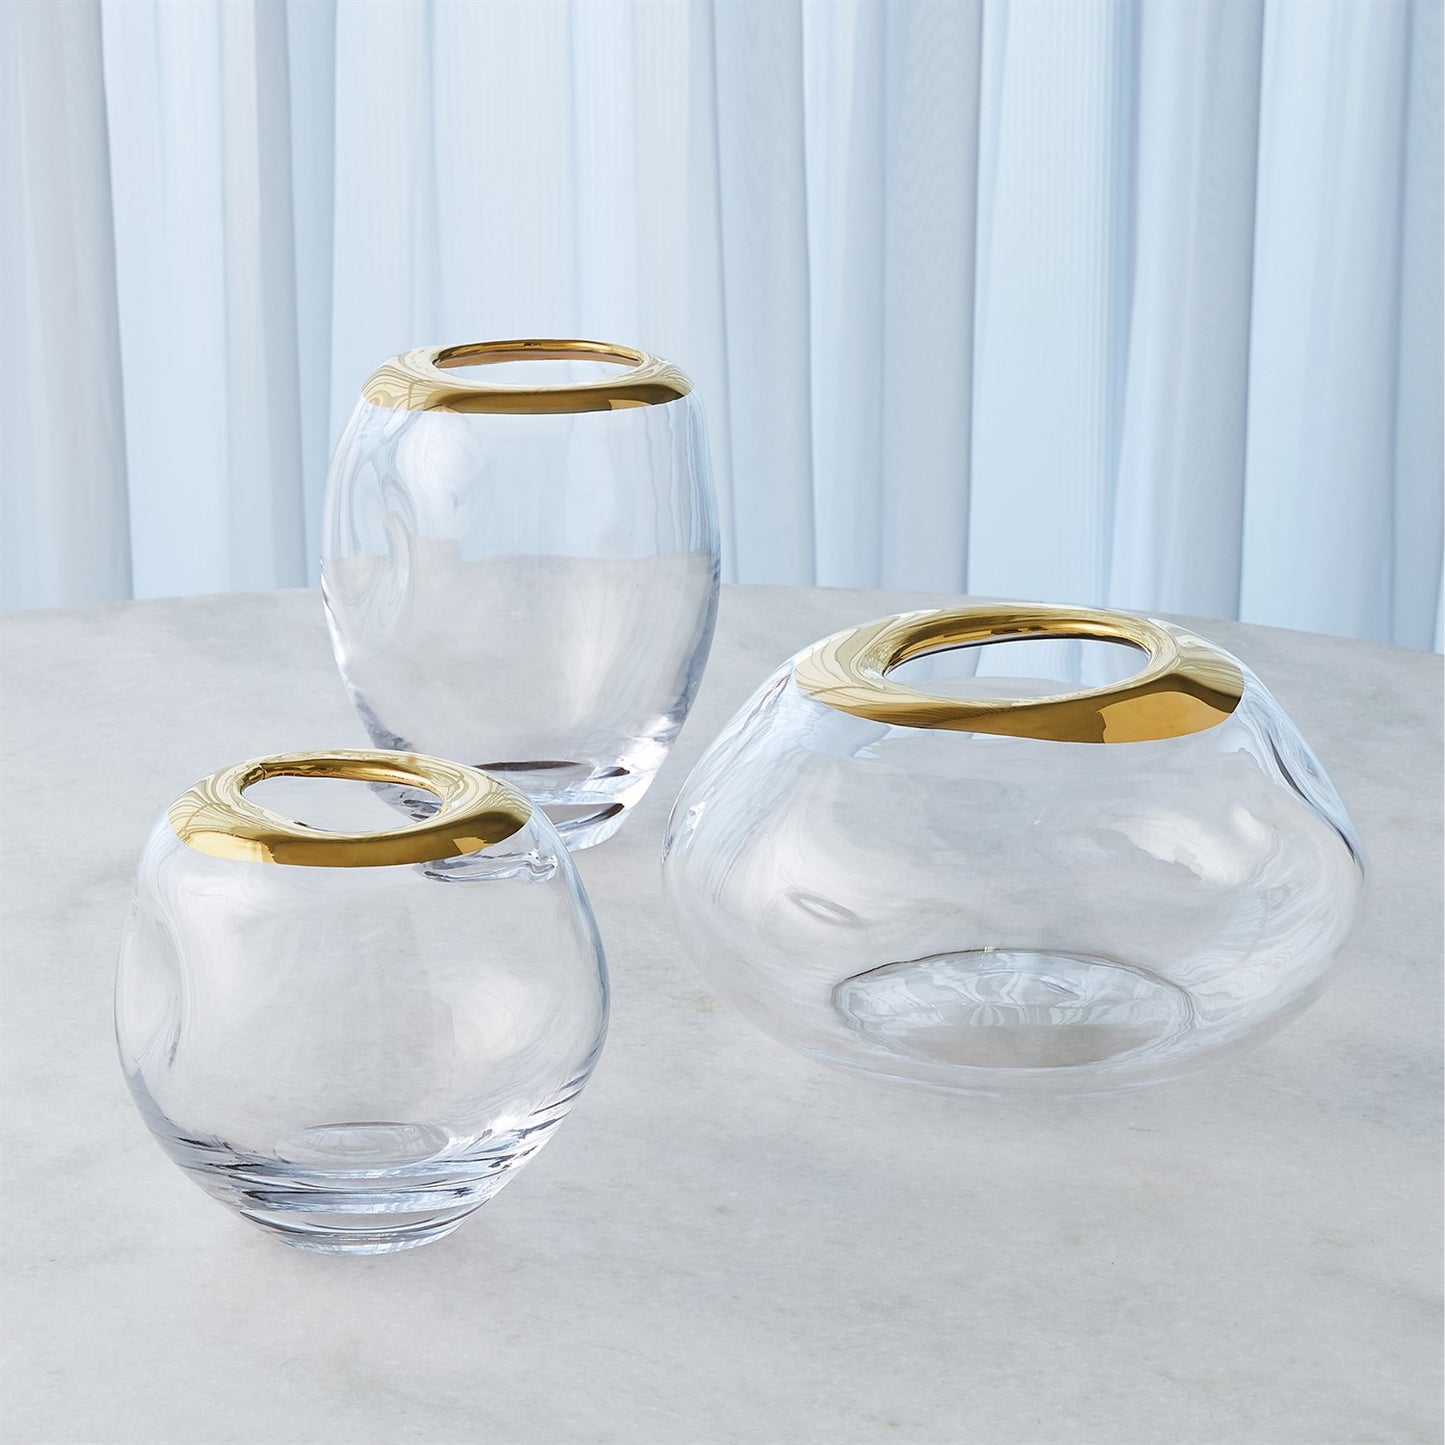 Organic Formed Vase - Gold Rim